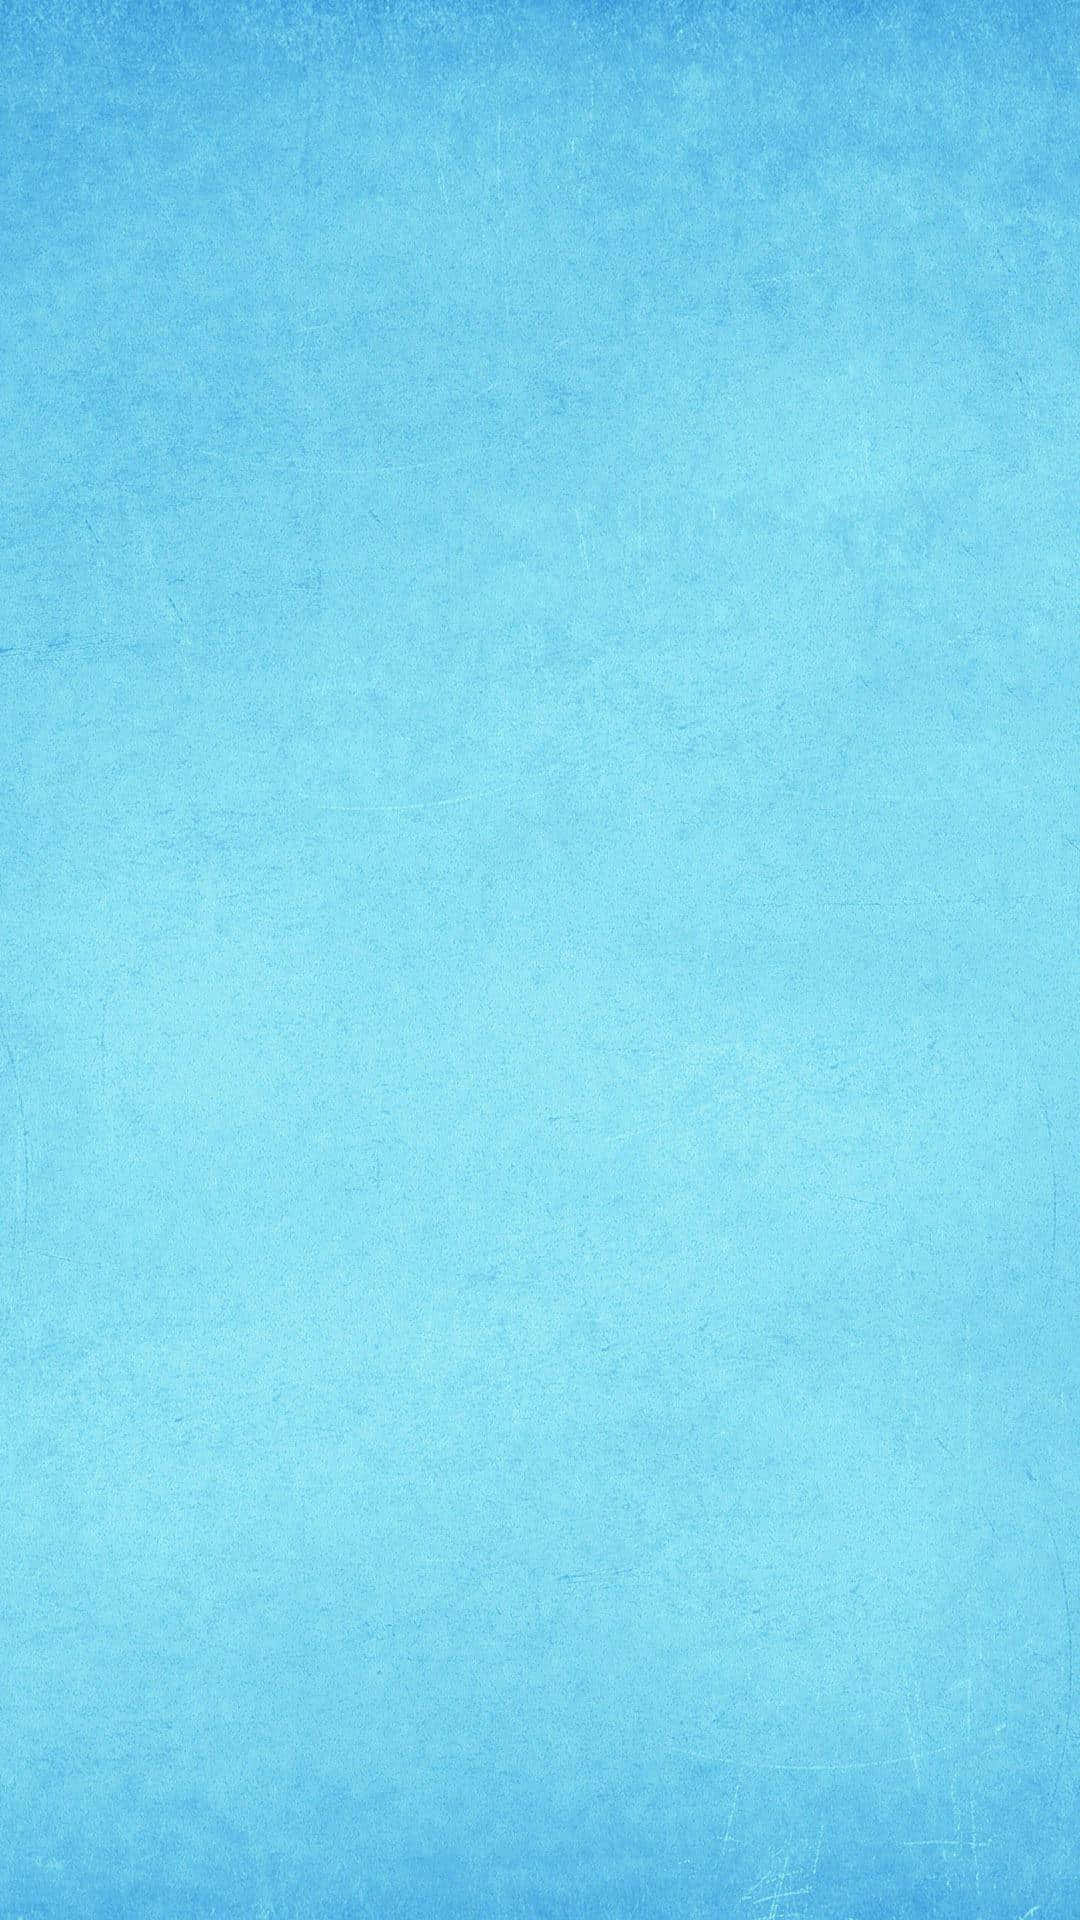 Hintergrundin Himmelblau - Minimalistisches Blau